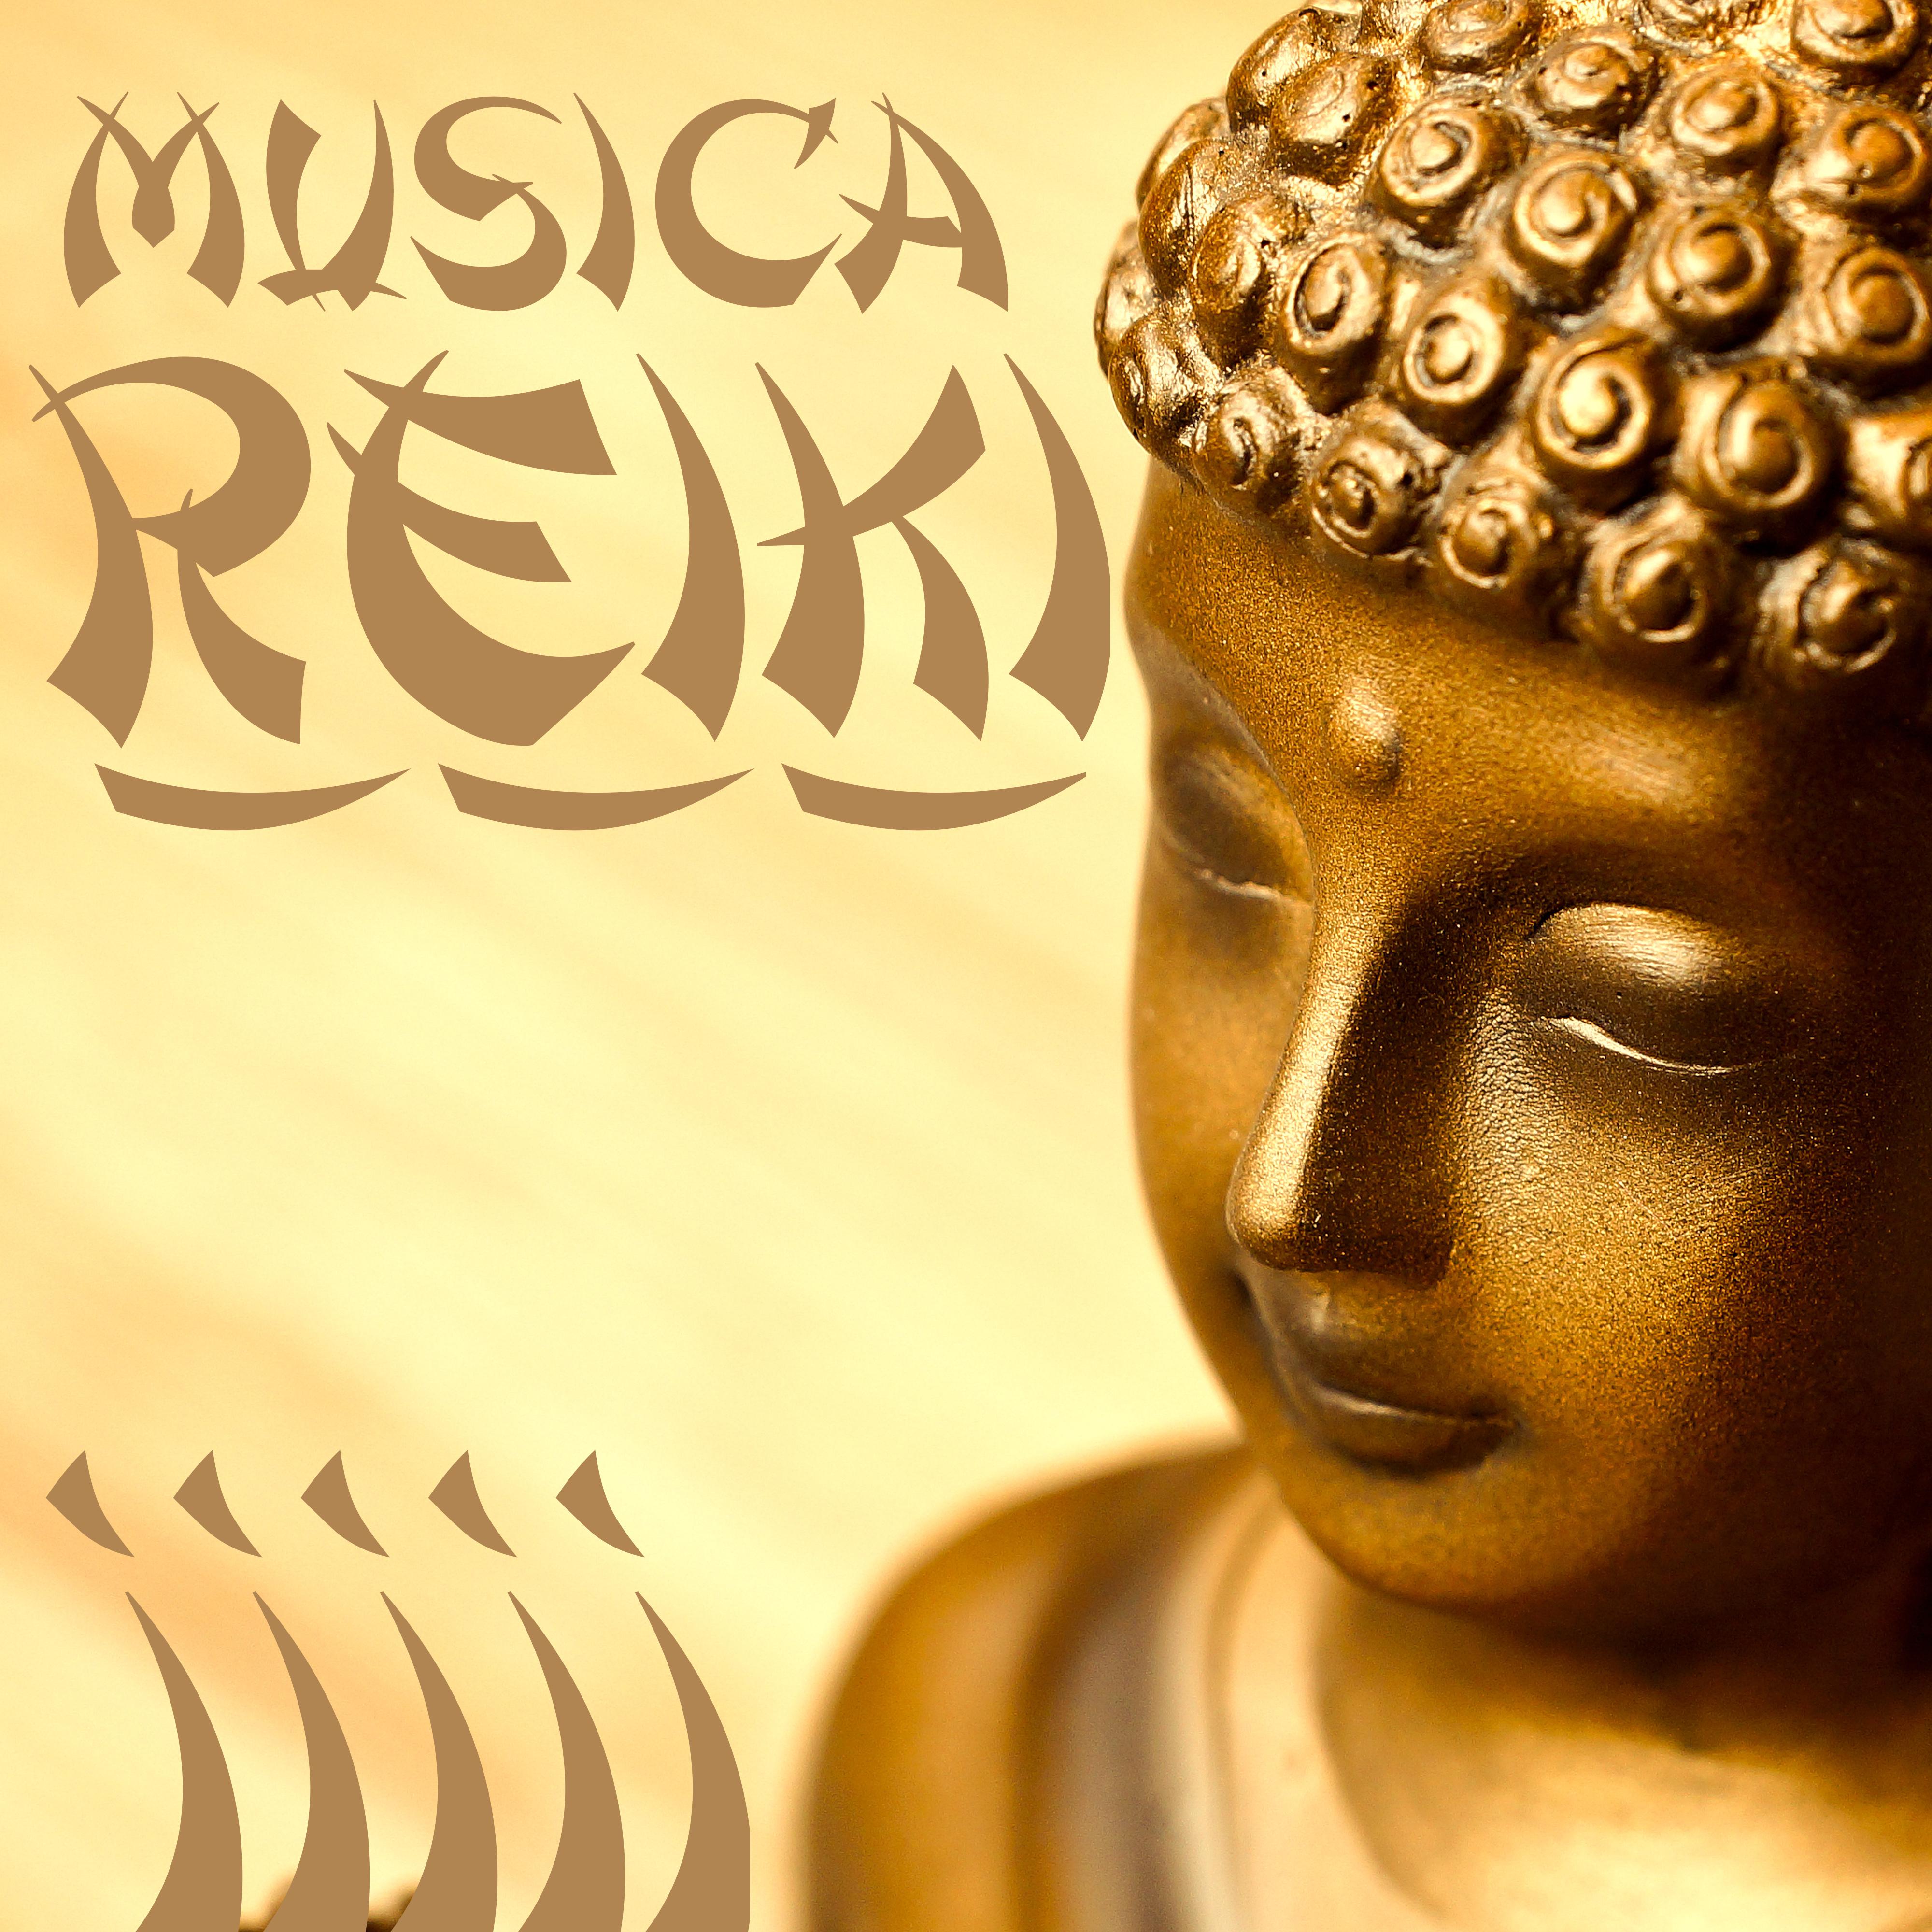 Música Reiki para Relajaciòn – Música Relagante para Trabajar Concentrado y Calmar la Mente, Música para Descansar y Curar la Ansiedad